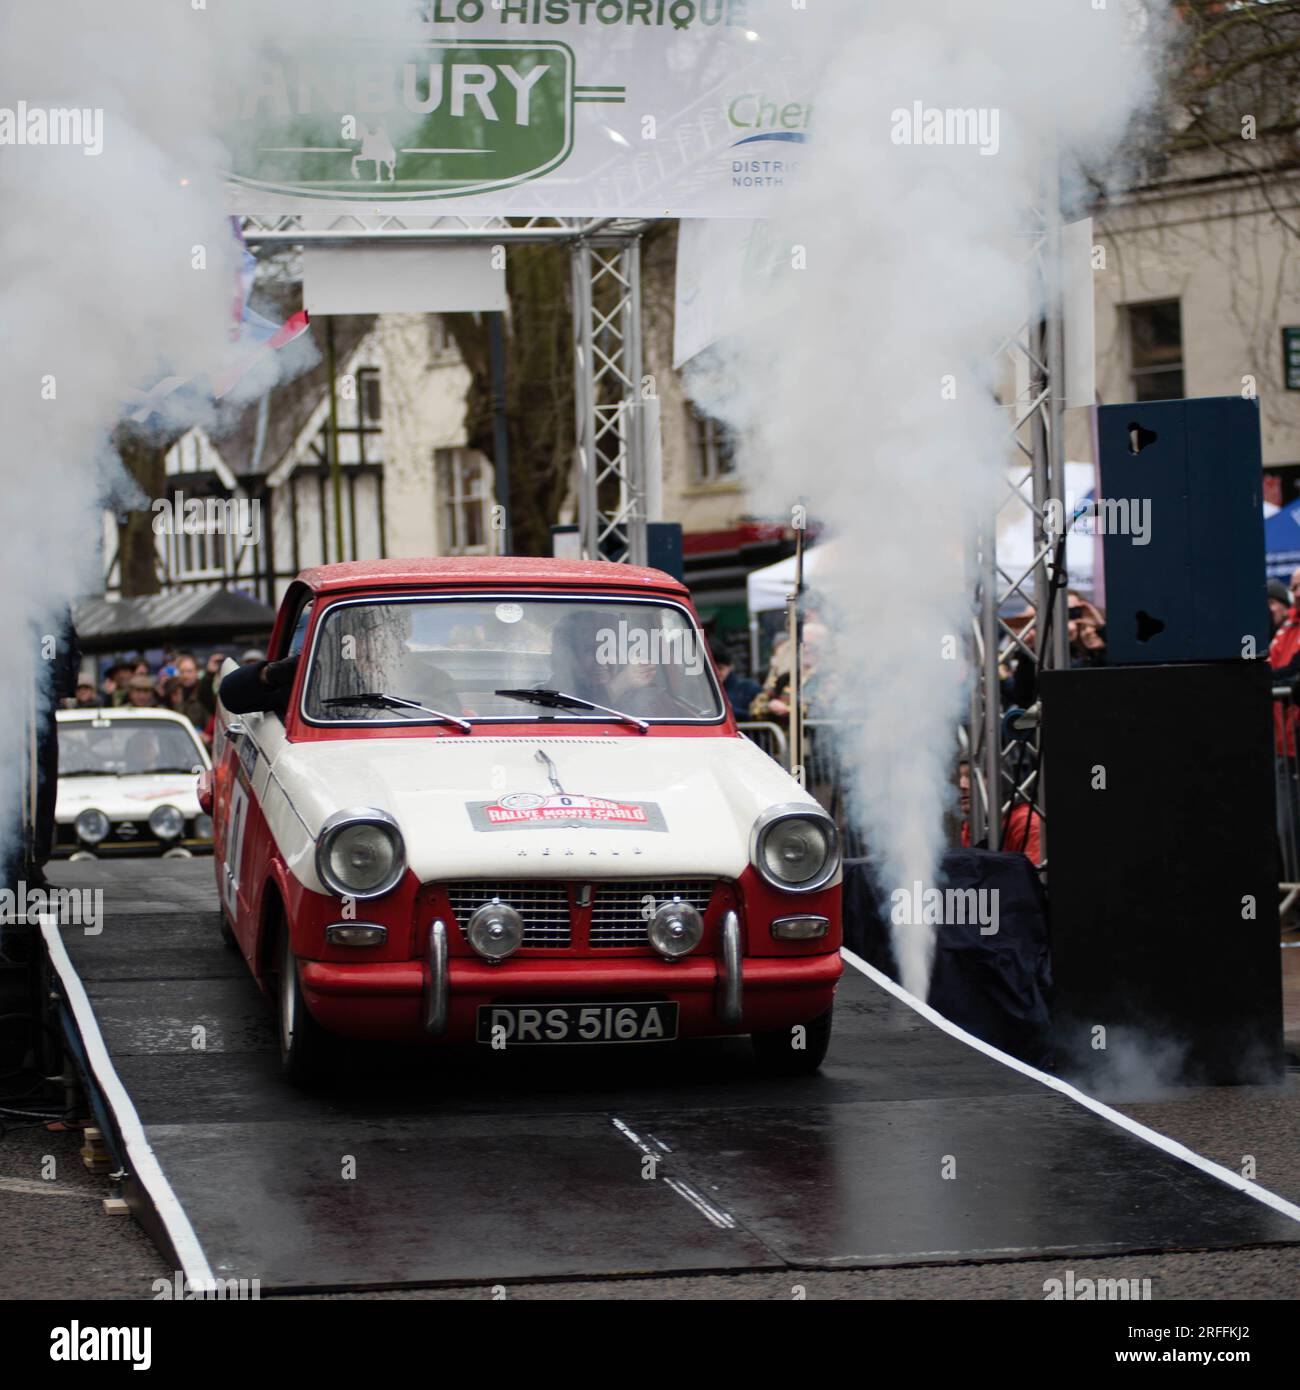 1963 Triumph Herald leaves the start line, Monte Carlo Rallye Historique Stock Photo